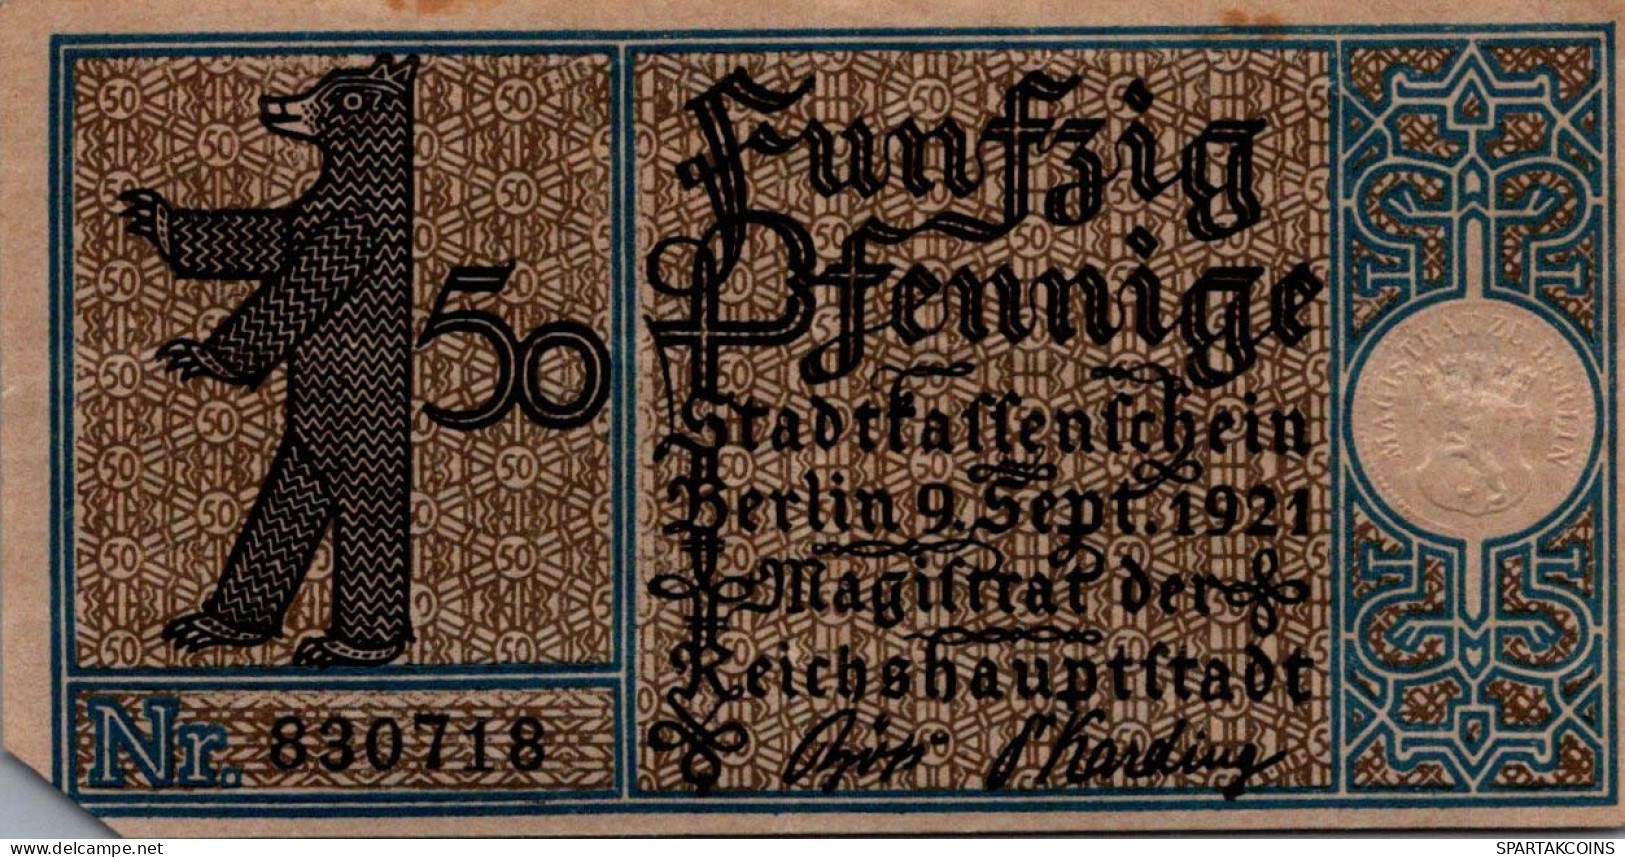 50 PFENNIG 1921 Stadt BERLIN DEUTSCHLAND Notgeld Banknote #PG387 - [11] Local Banknote Issues